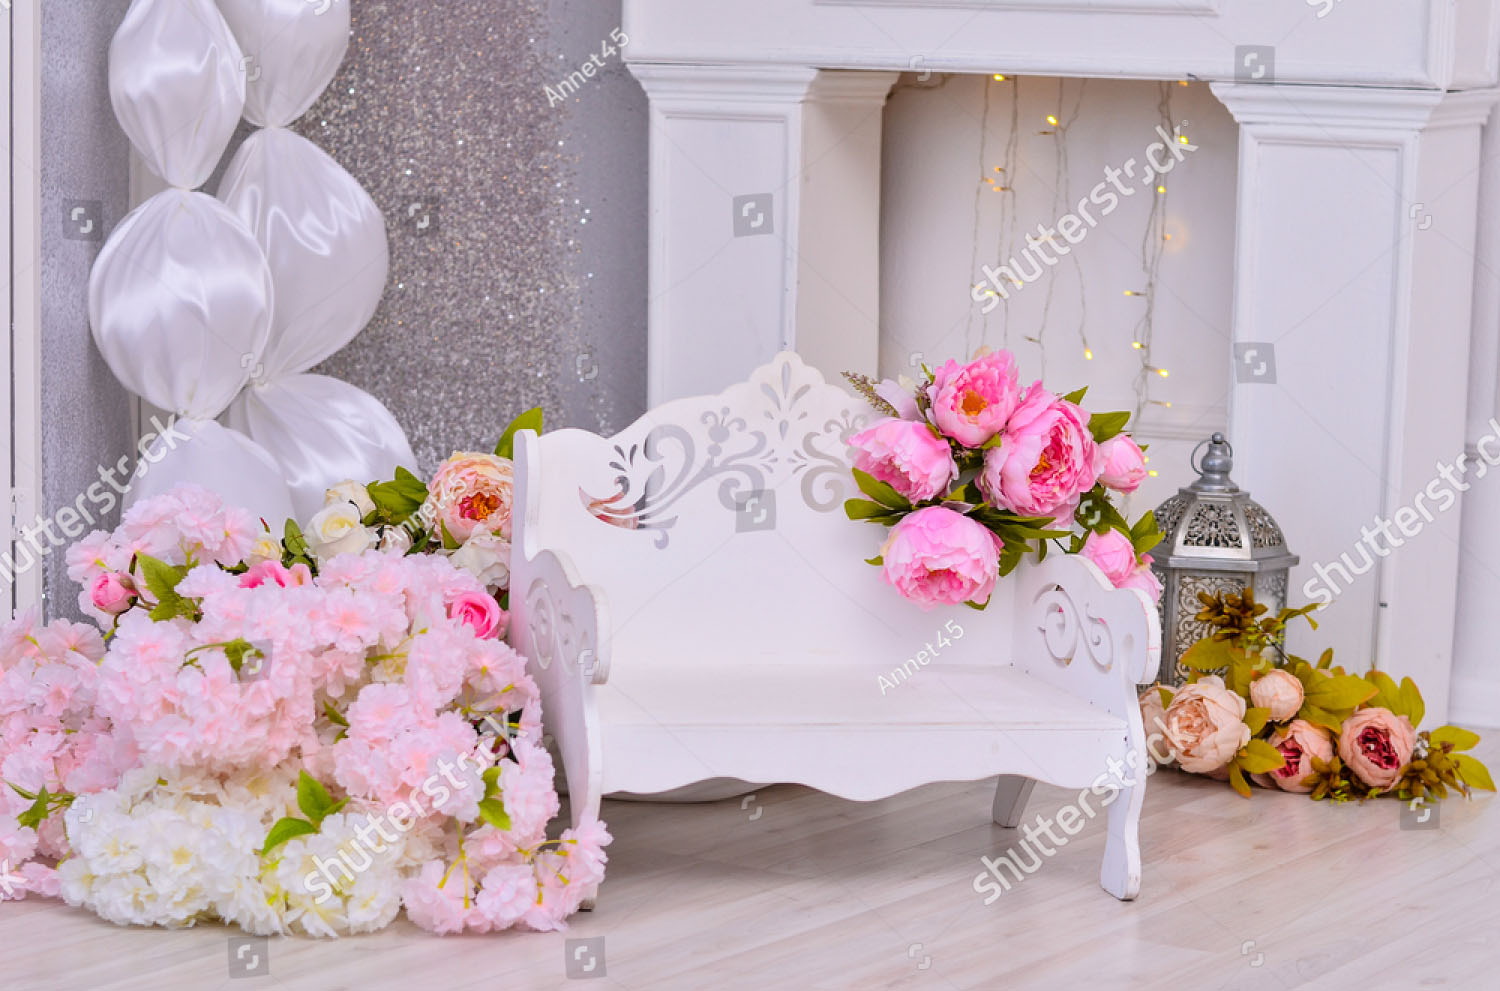 Фотозона из цветов на свадьбу. Купить фотозону из бумажных цветов